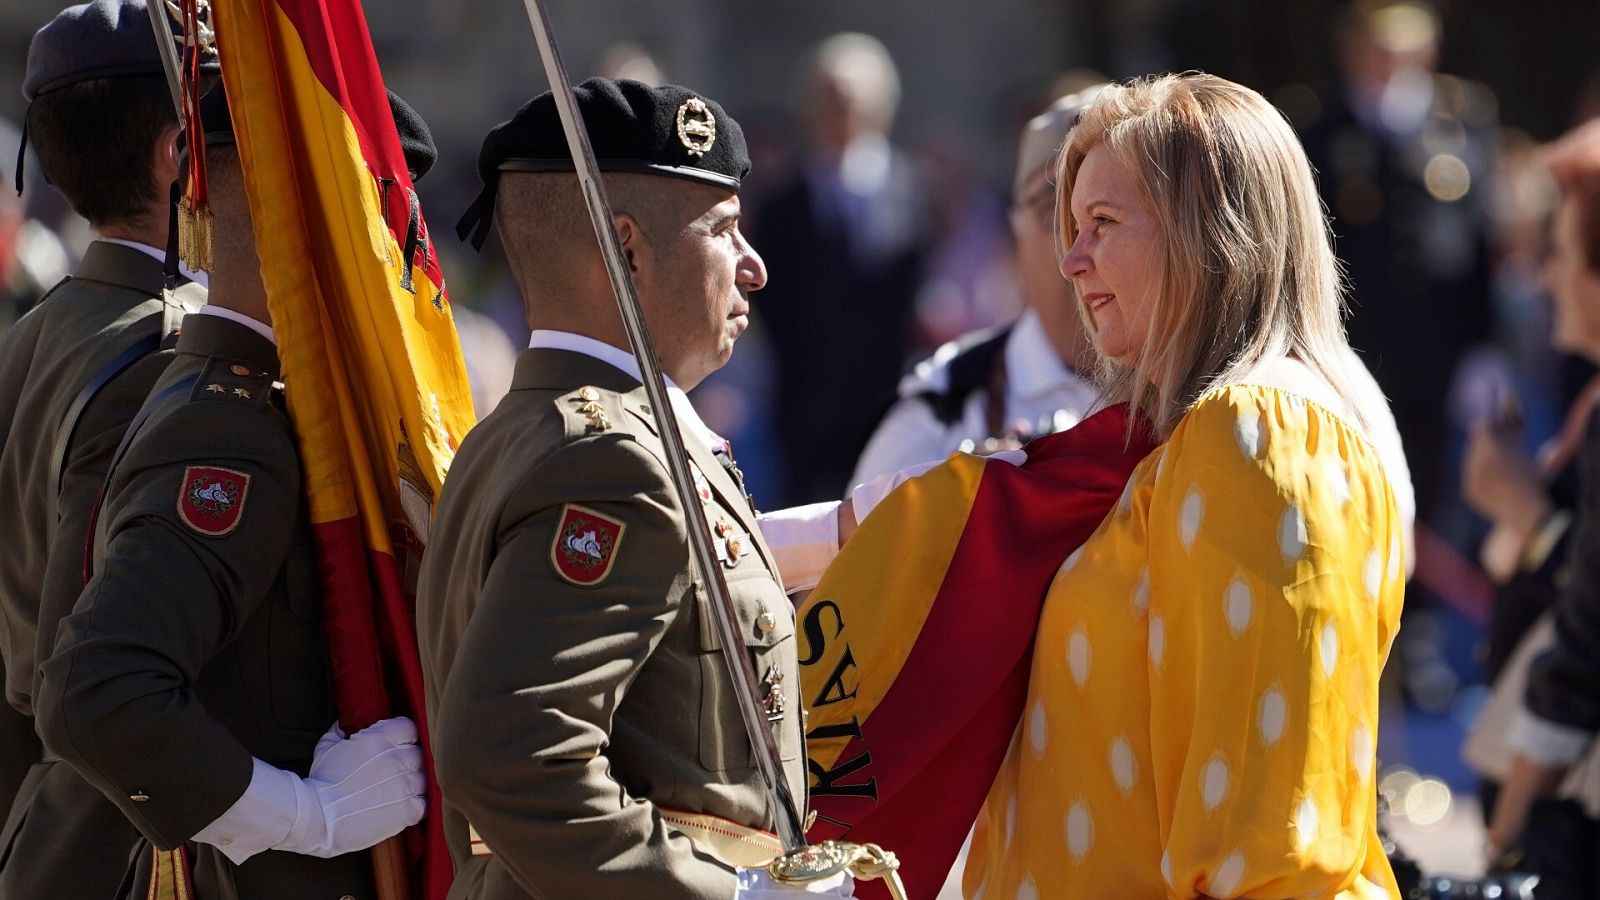 Una civil coloca la bandera en su pecho durante la Jura de Bandera en Oviedo.